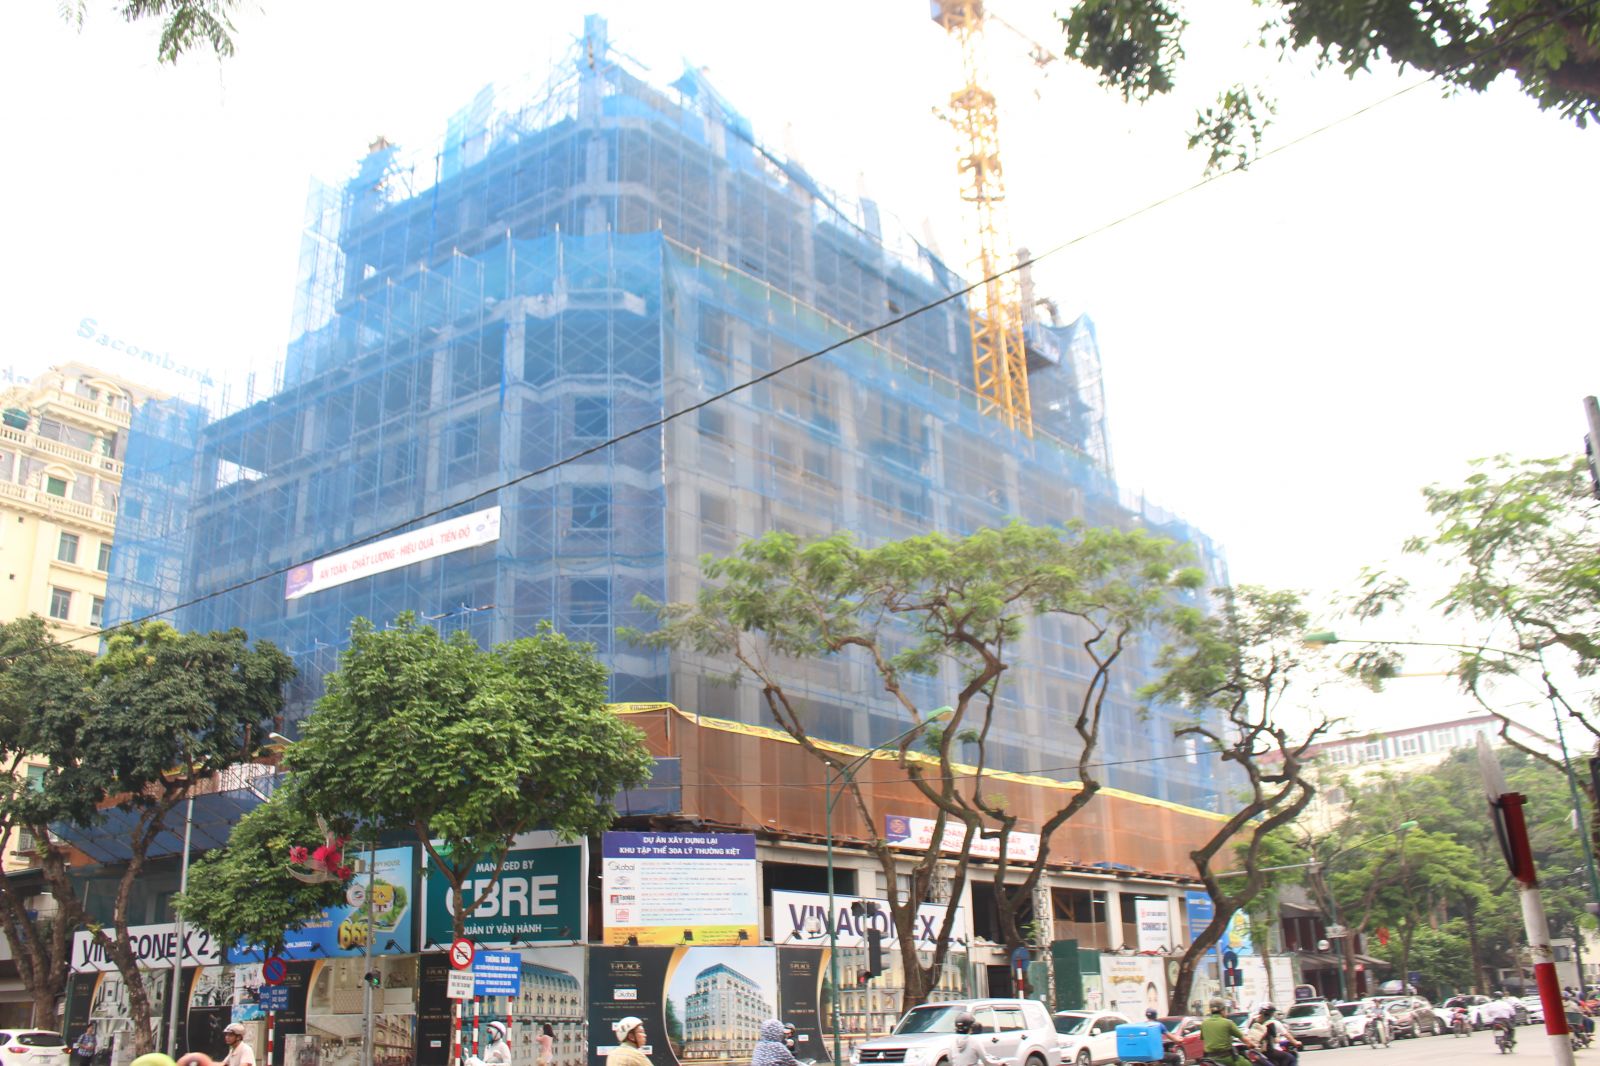 Năm 2008 thực hiện nghị quyết của HĐND TP Hà Nội về việc cải tạo chung cư , khu tập thể 30A Lý Thường Kiệt bị xuống cấp và nằm trong diện cải tạo này. 